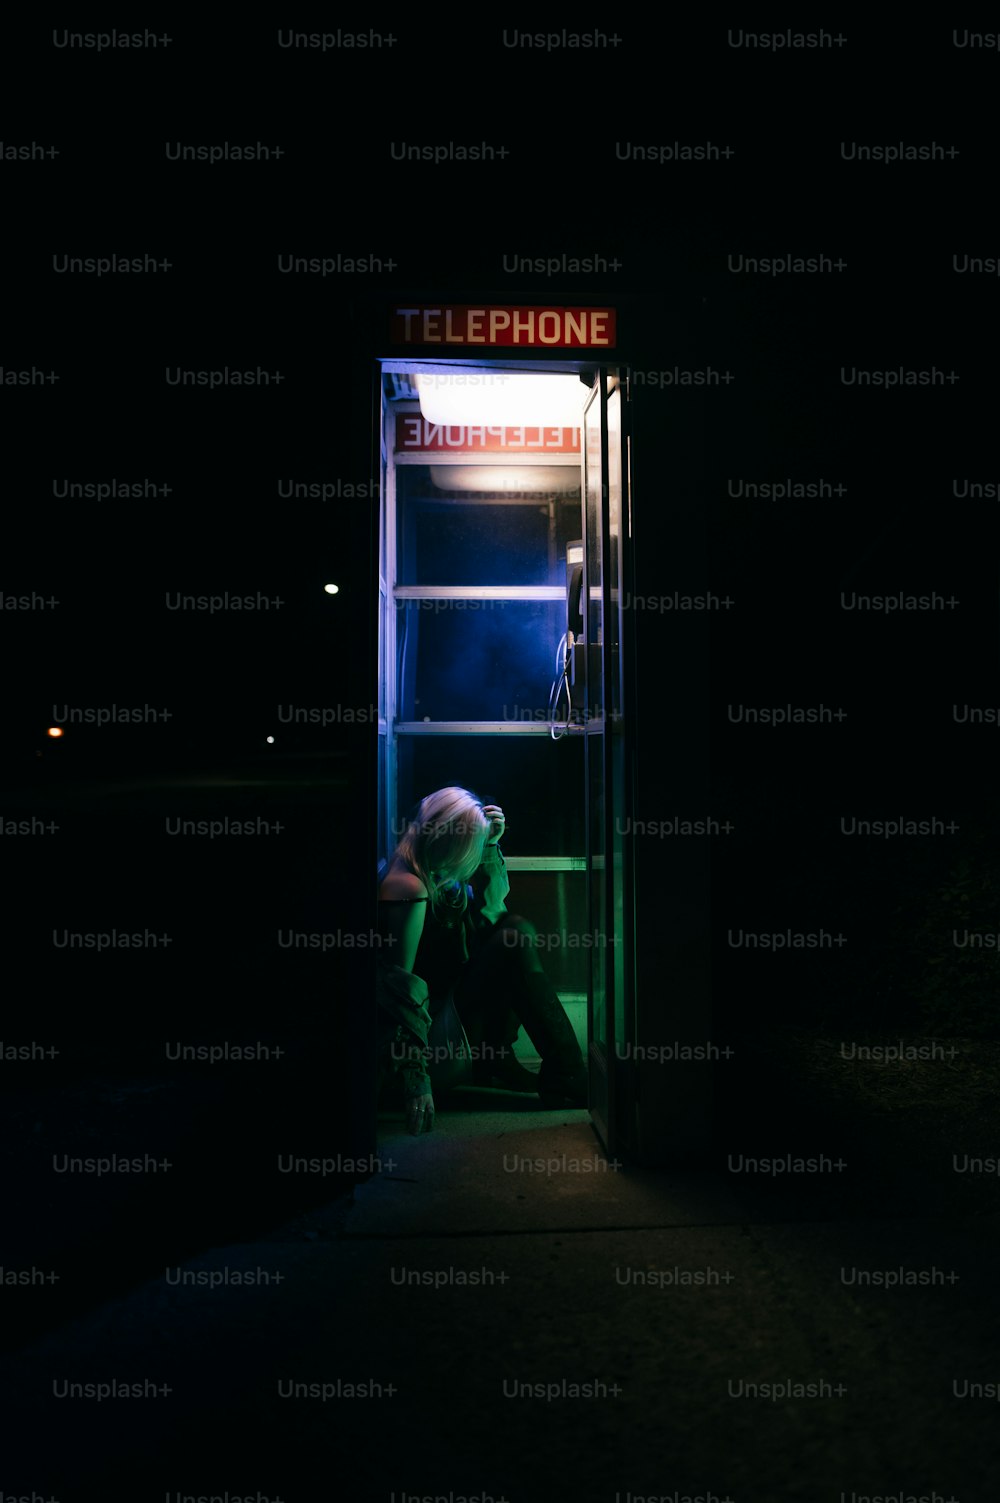 eine Person, die nachts in einer Telefonzelle sitzt